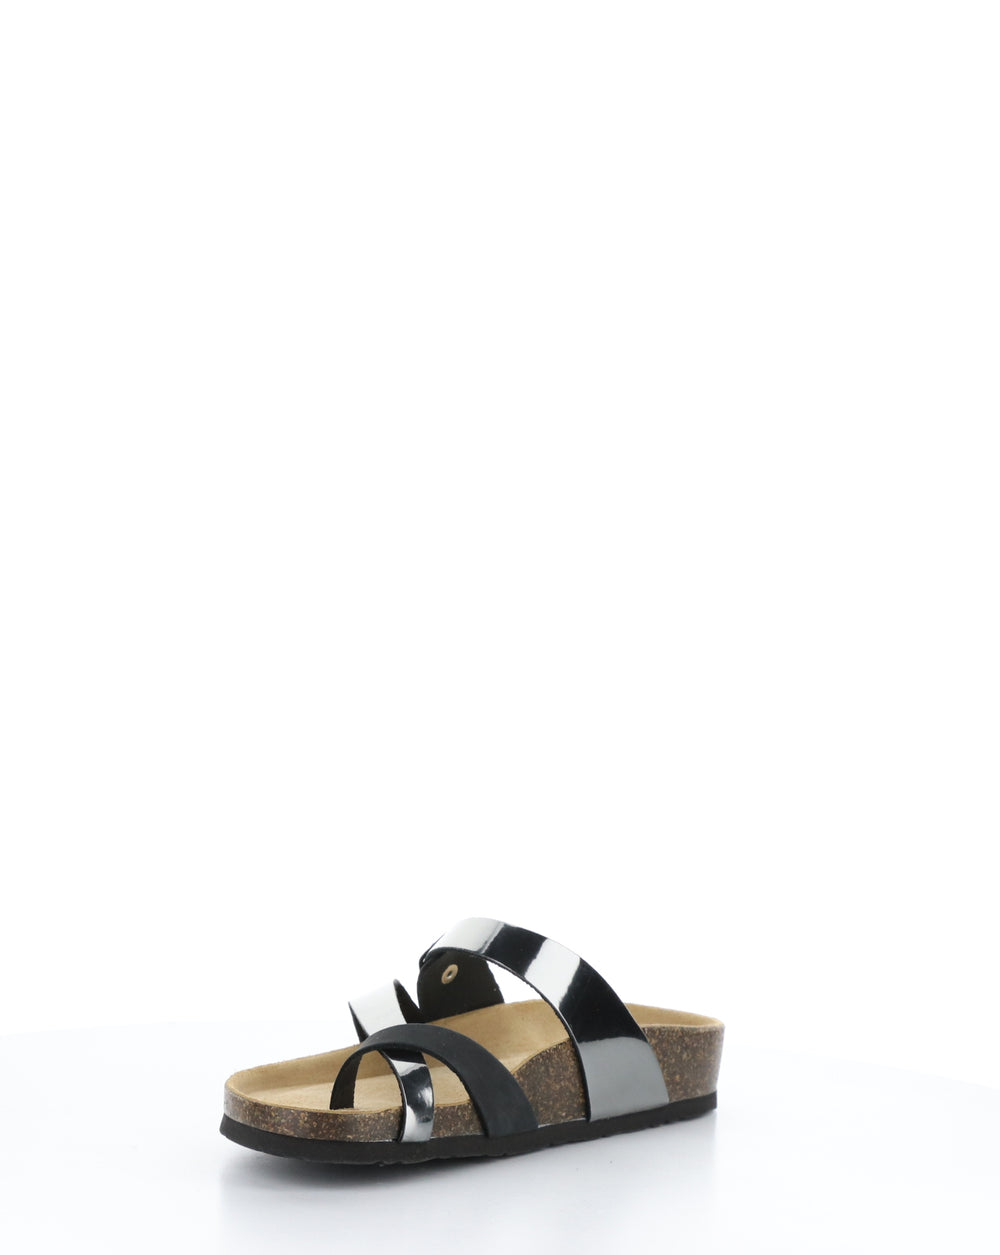 PARR BLACK/PEWTER Slip-on Sandals